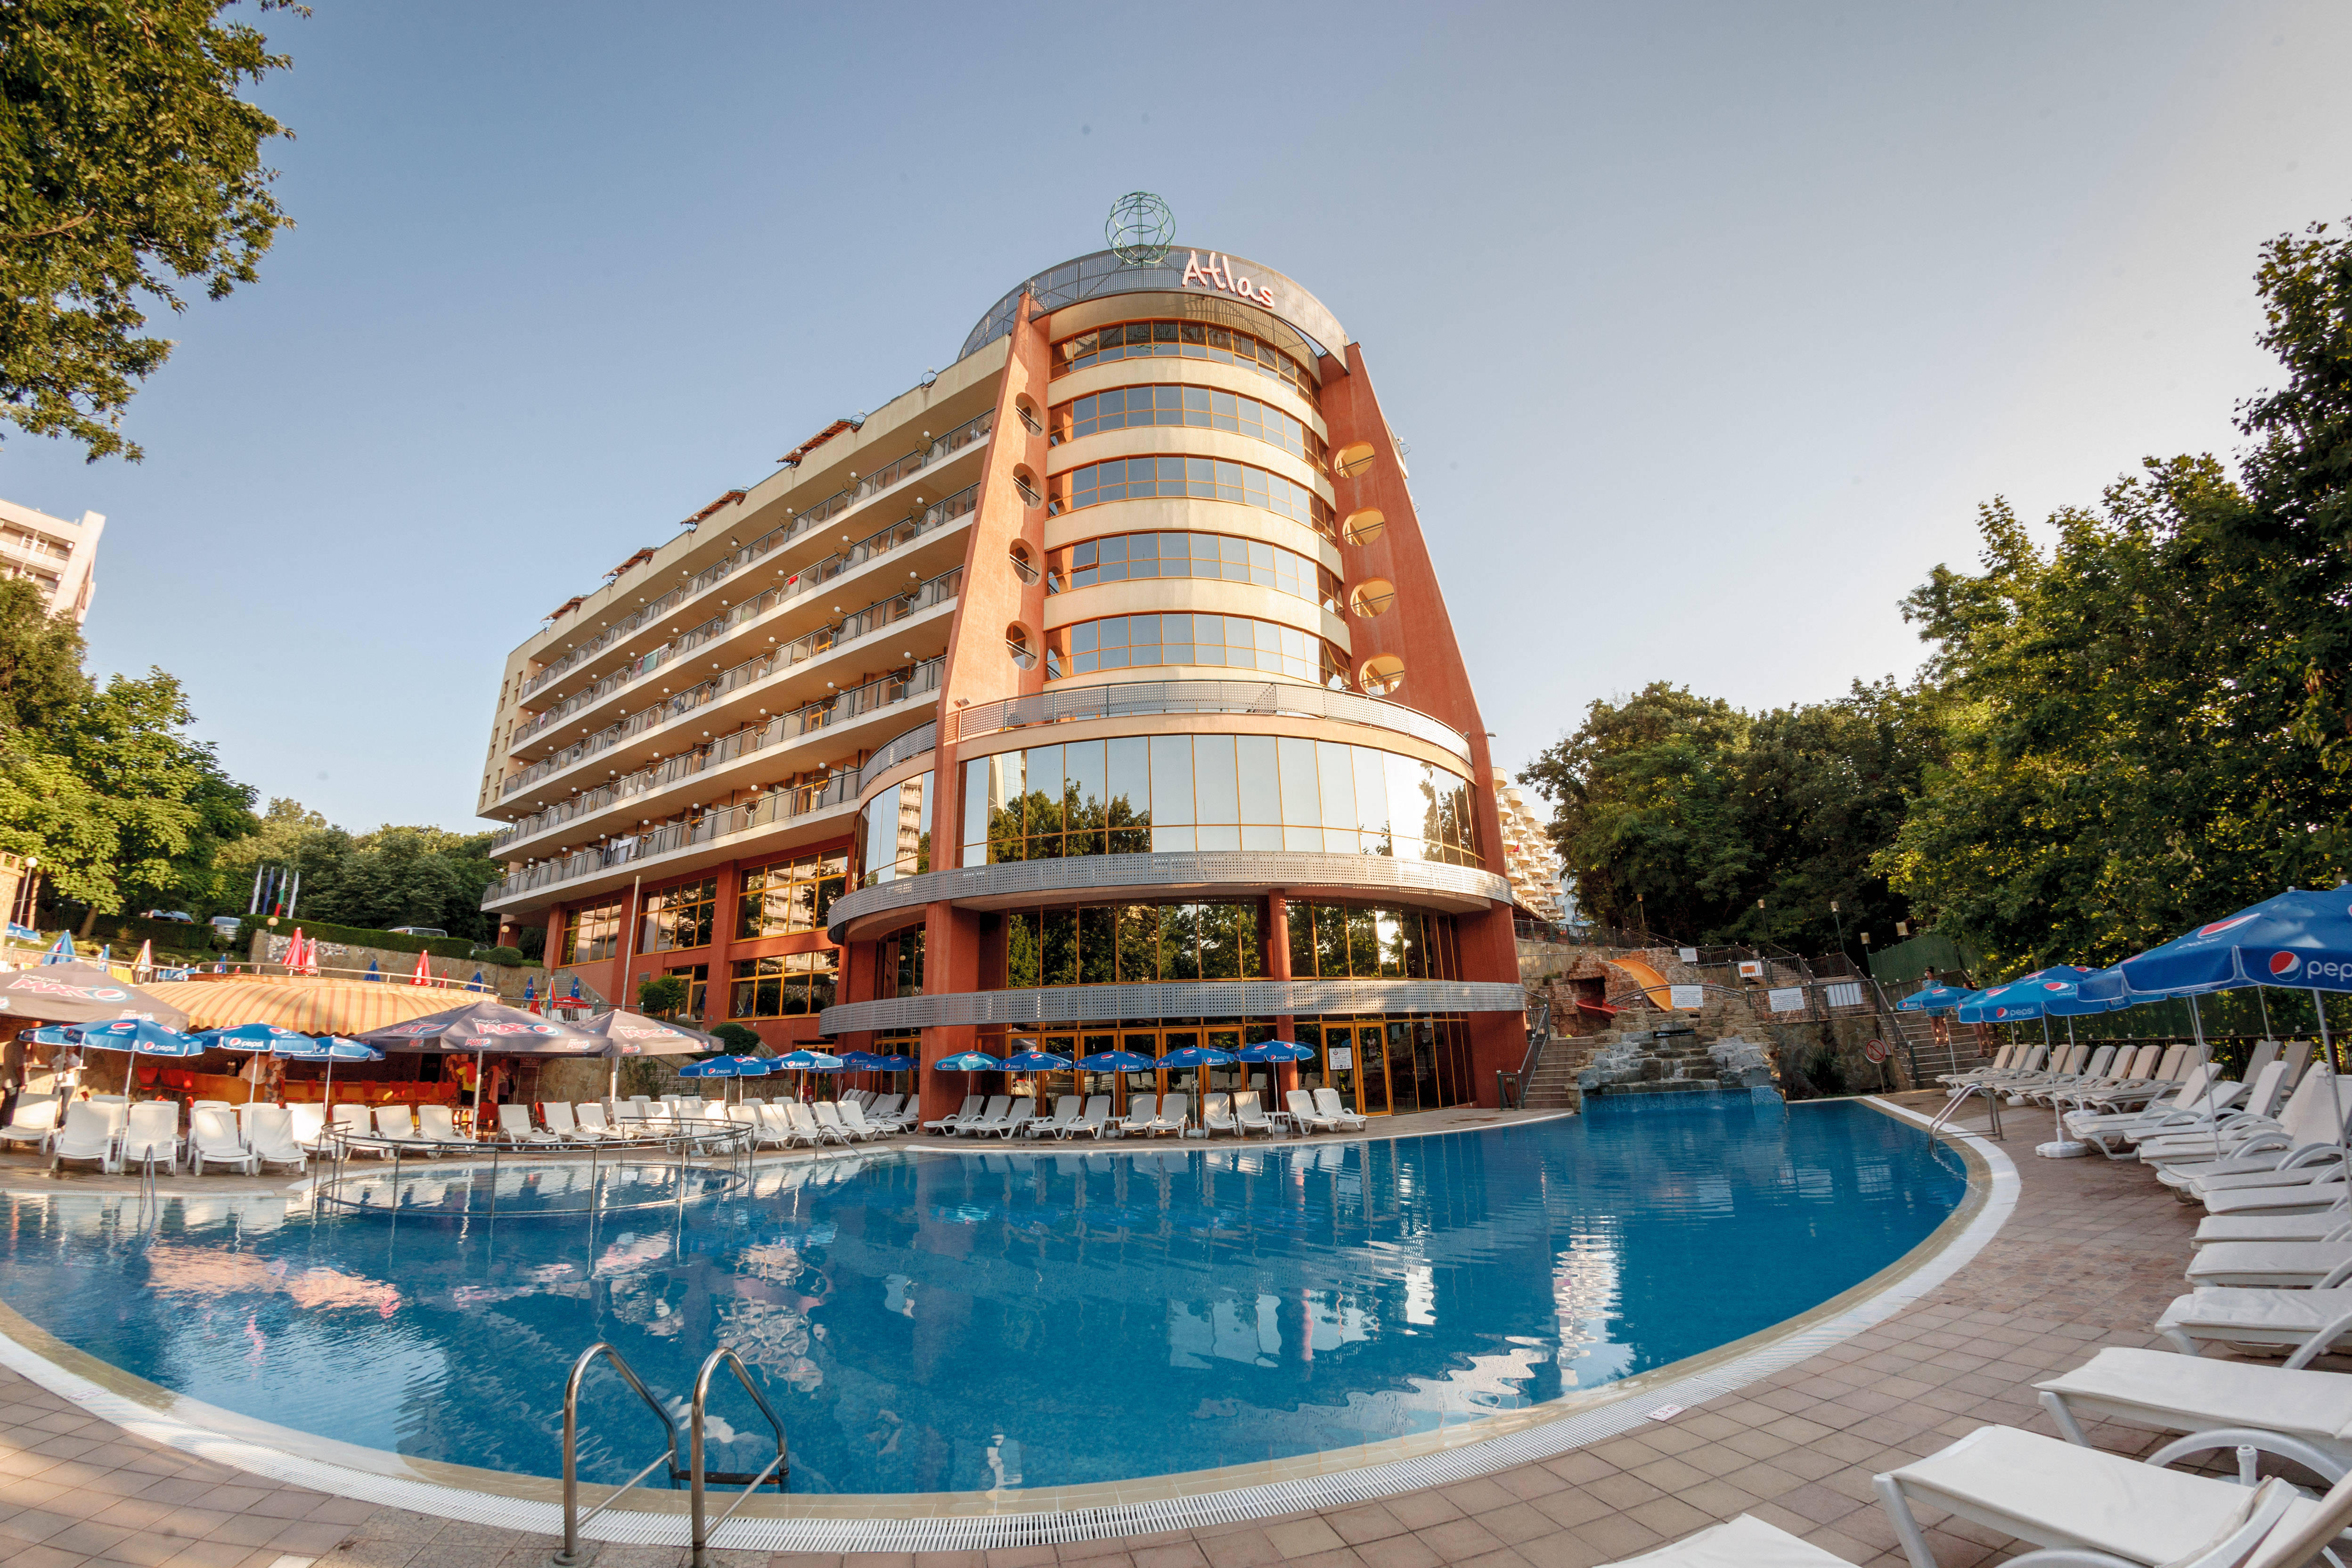 Hotel Atlas in Goldstrand • HolidayCheck | Bulgarien ...